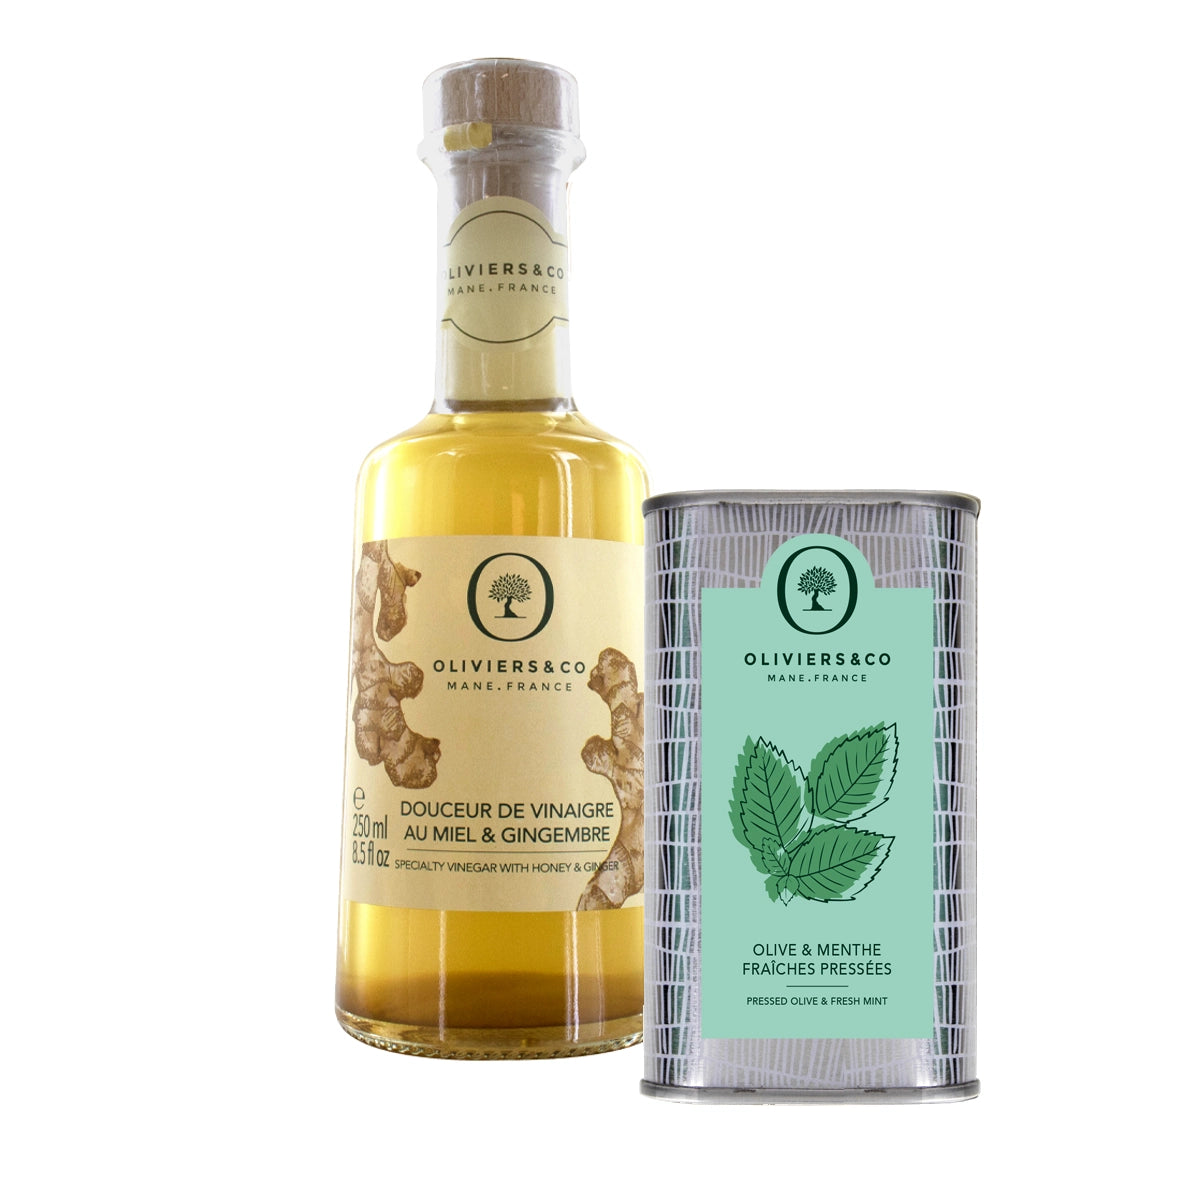 Olie & eddikesæt olivenolie med mynte 250ml, honning-ingefæreddike, 250ml, Oliviers & Co